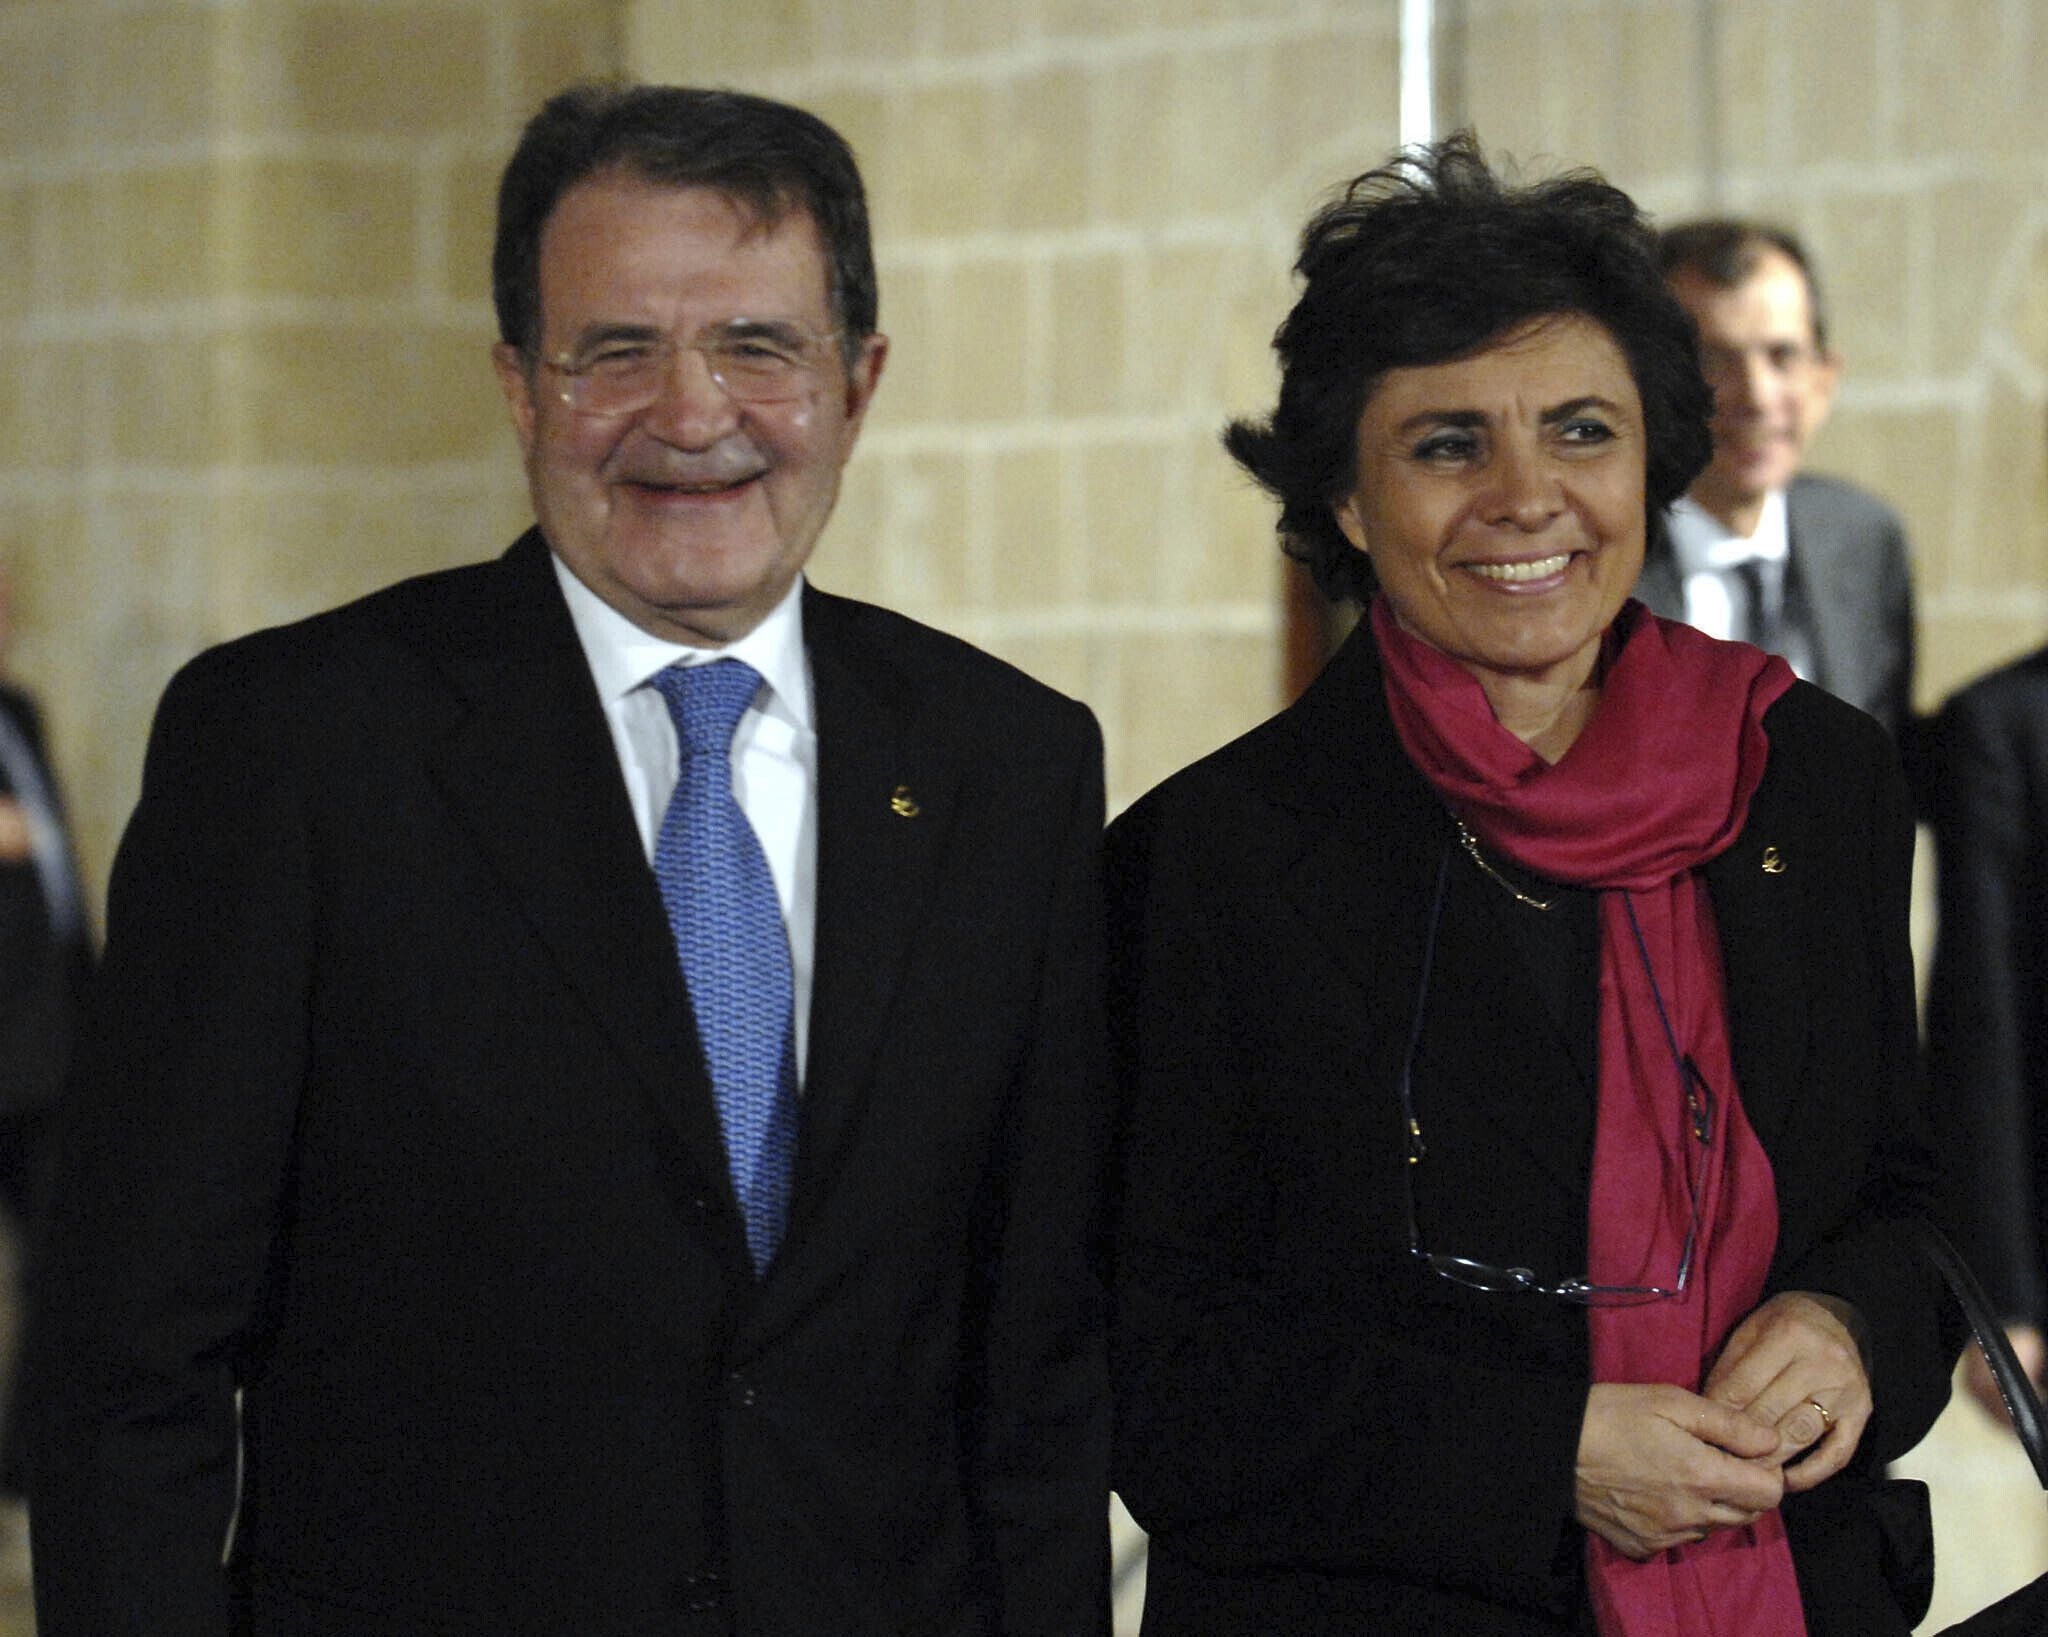 La esposa y profesora del ex primer ministro italiano Romano Prodi, Flavia Franzoni, murió a los 76 años.